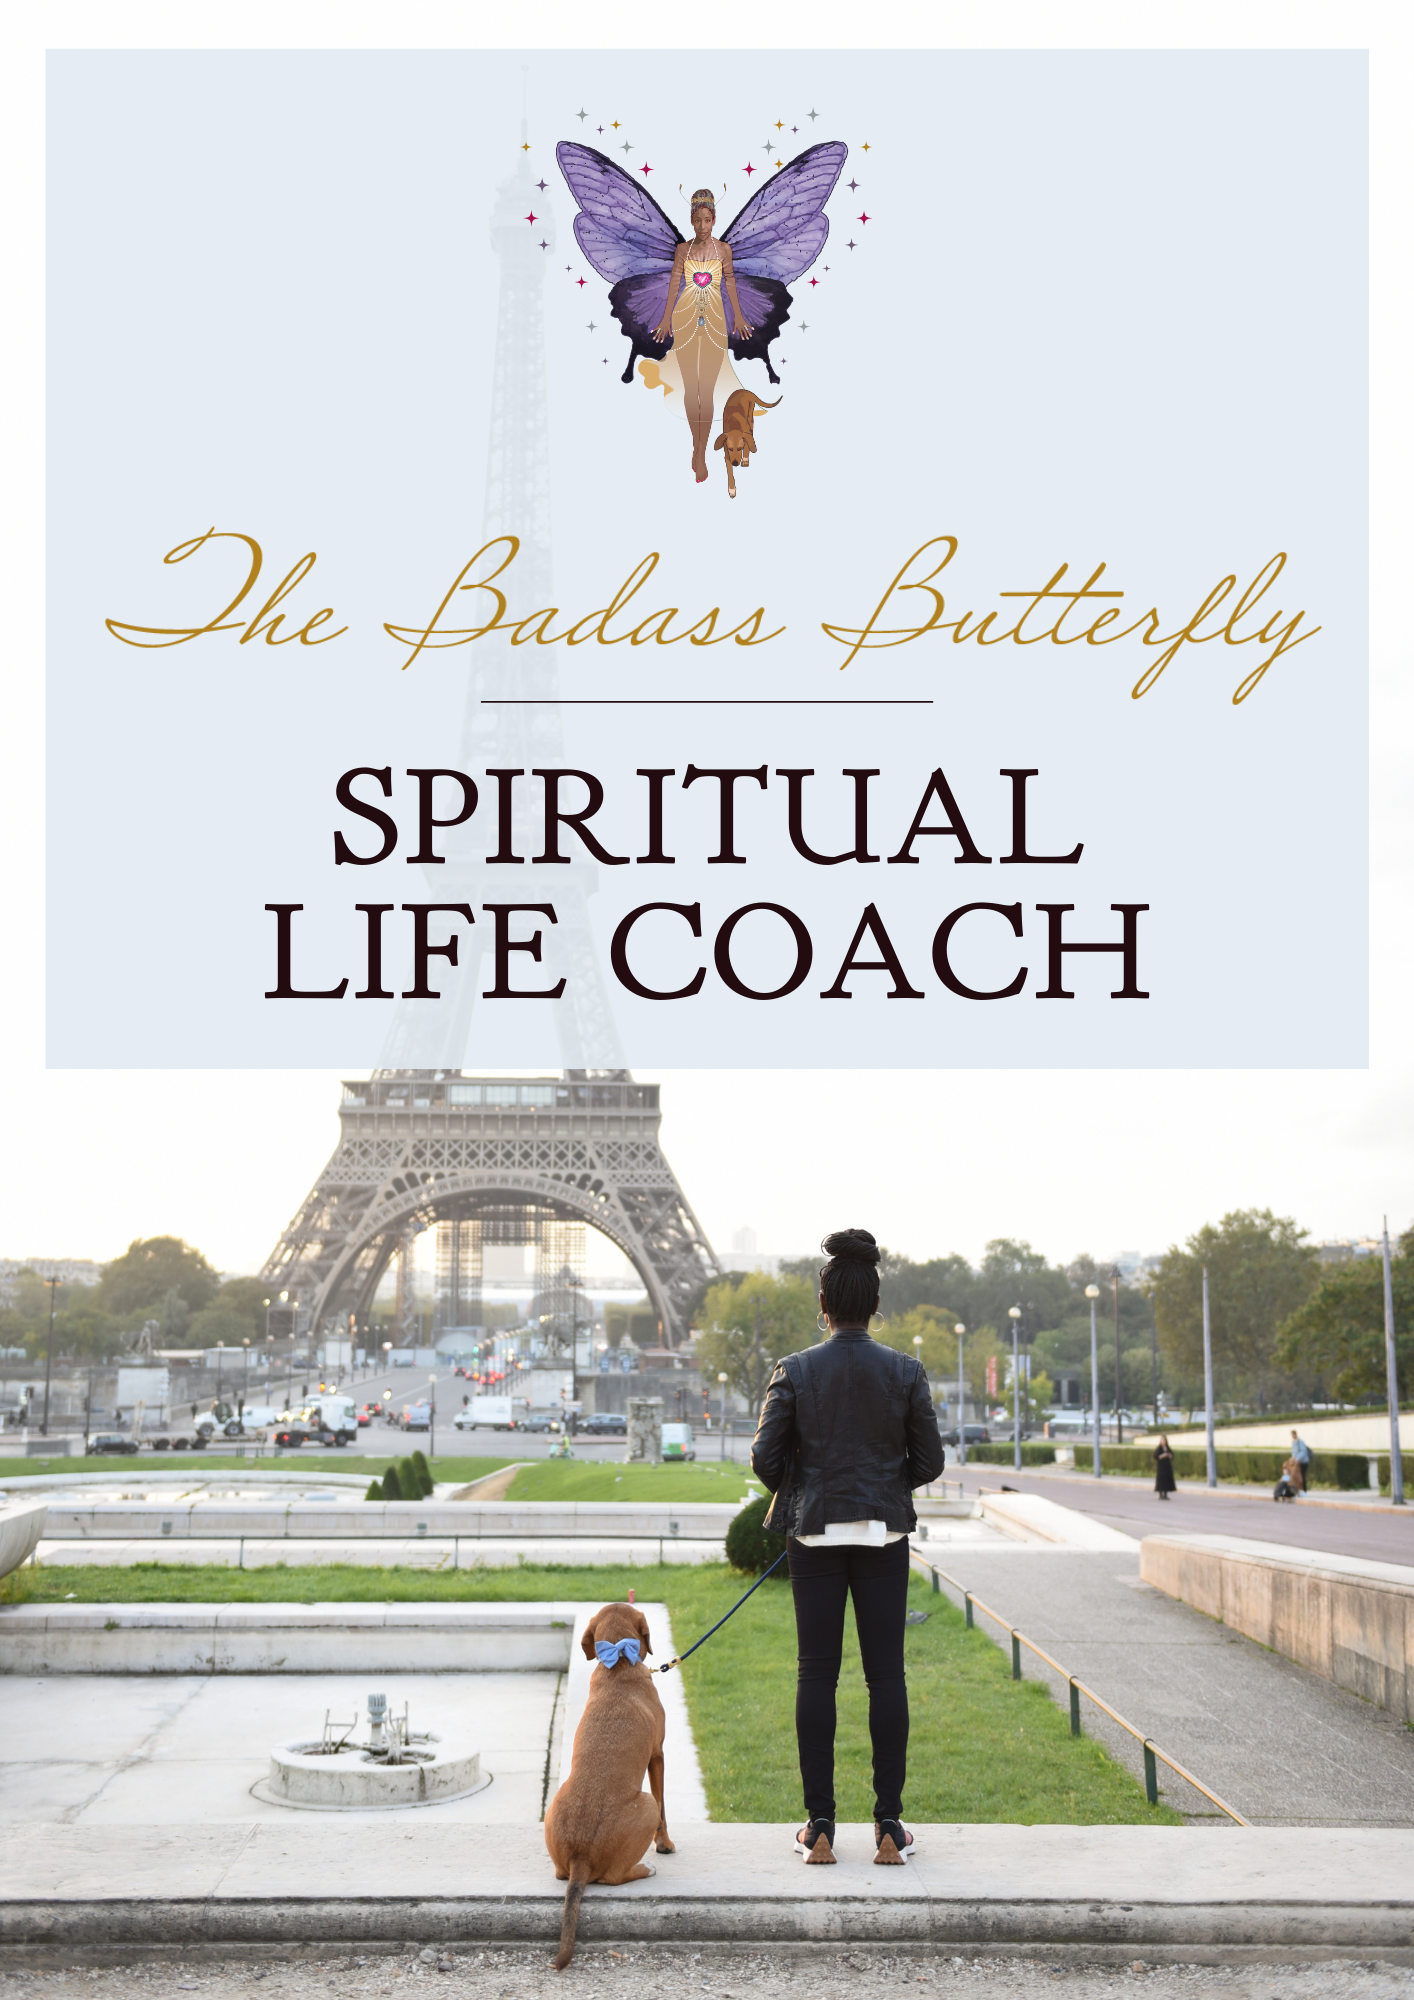 The Badass Butterfly Spiritual Life Coach